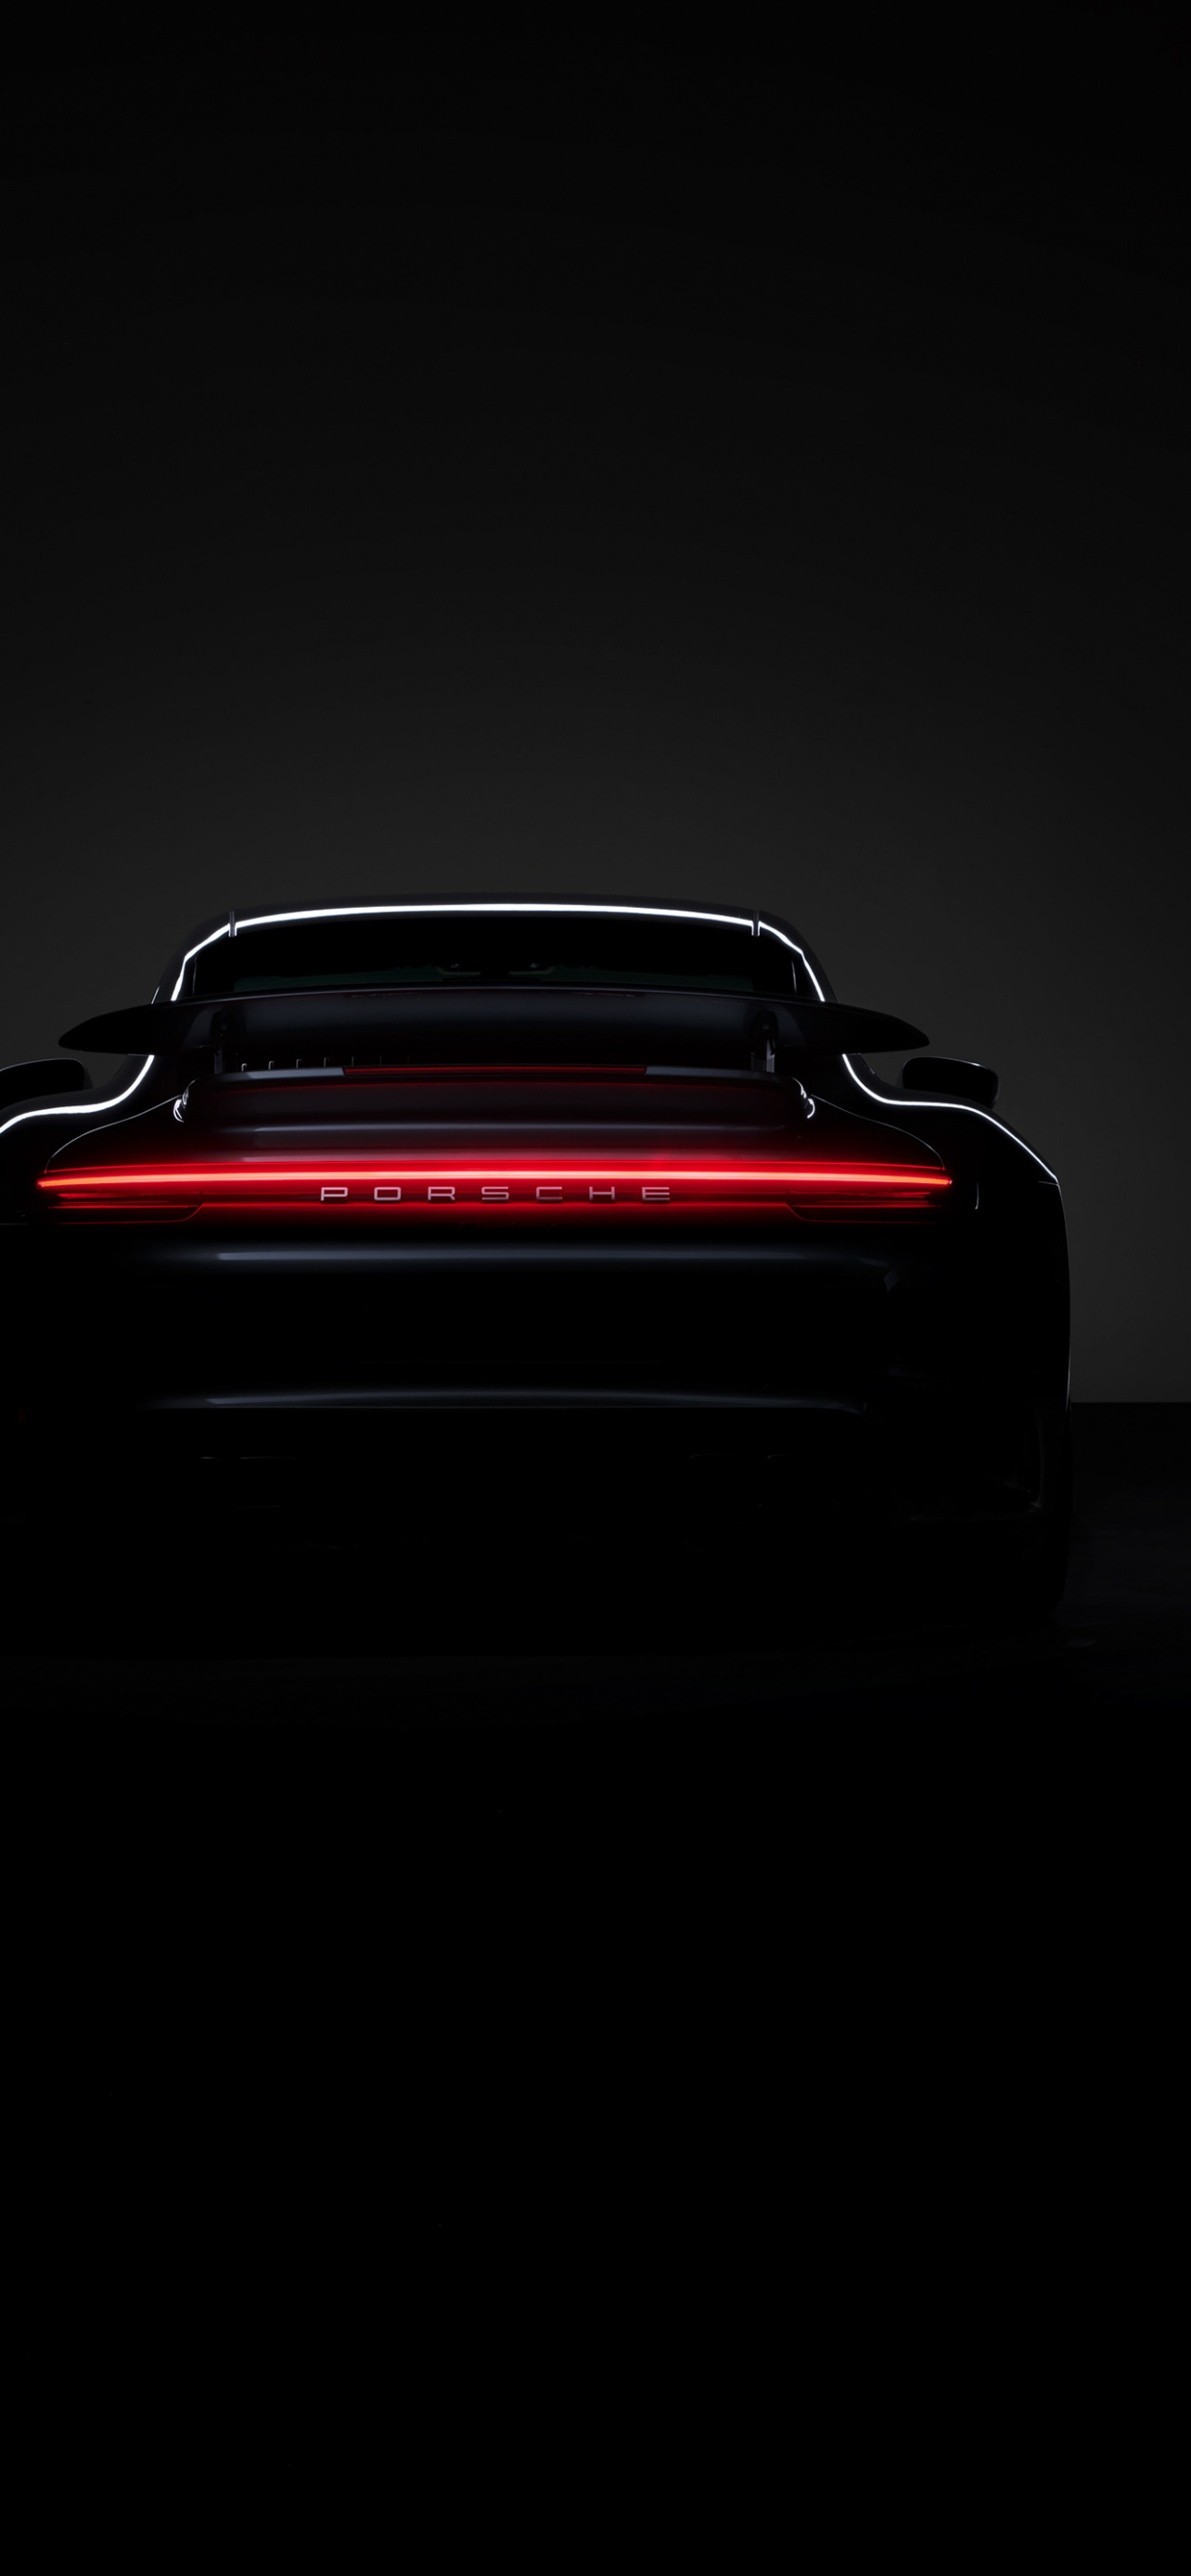 Bạn muốn điểm tô cho chiếc iPhone của mình thêm phần nổi bật và đẳng cấp? Hãy sử dụng hình nền Porsche 911 Turbo S 4K đen đẹp! Với màu sắc ấn tượng và độ phân giải cao, hình nền này sẽ làm cho chiếc iPhone của bạn trở nên đẹp hơn bao giờ hết!